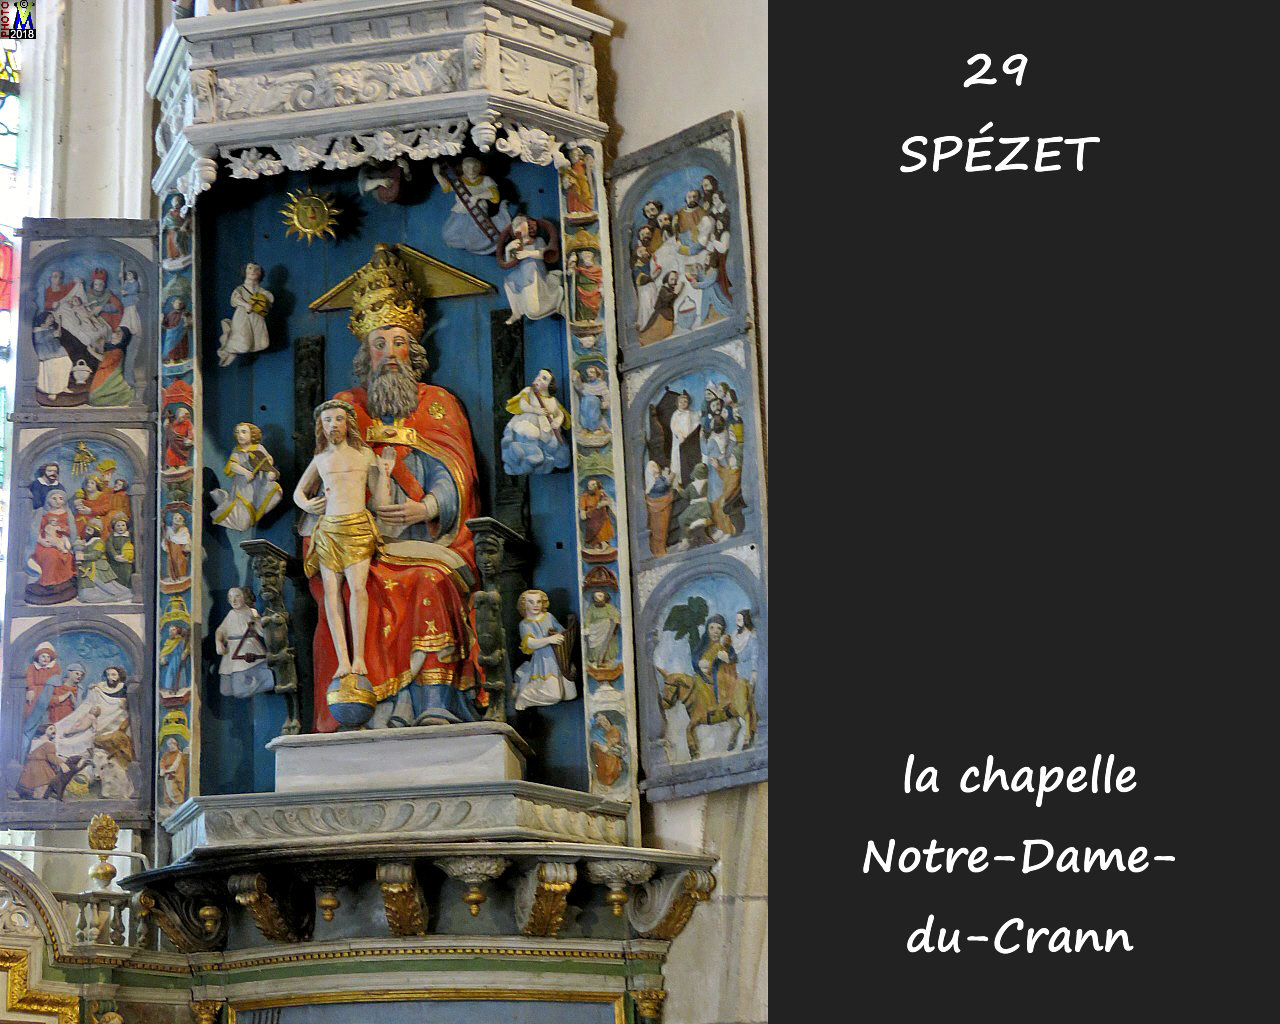 29SPEZET_chapelleNDC_224.jpg